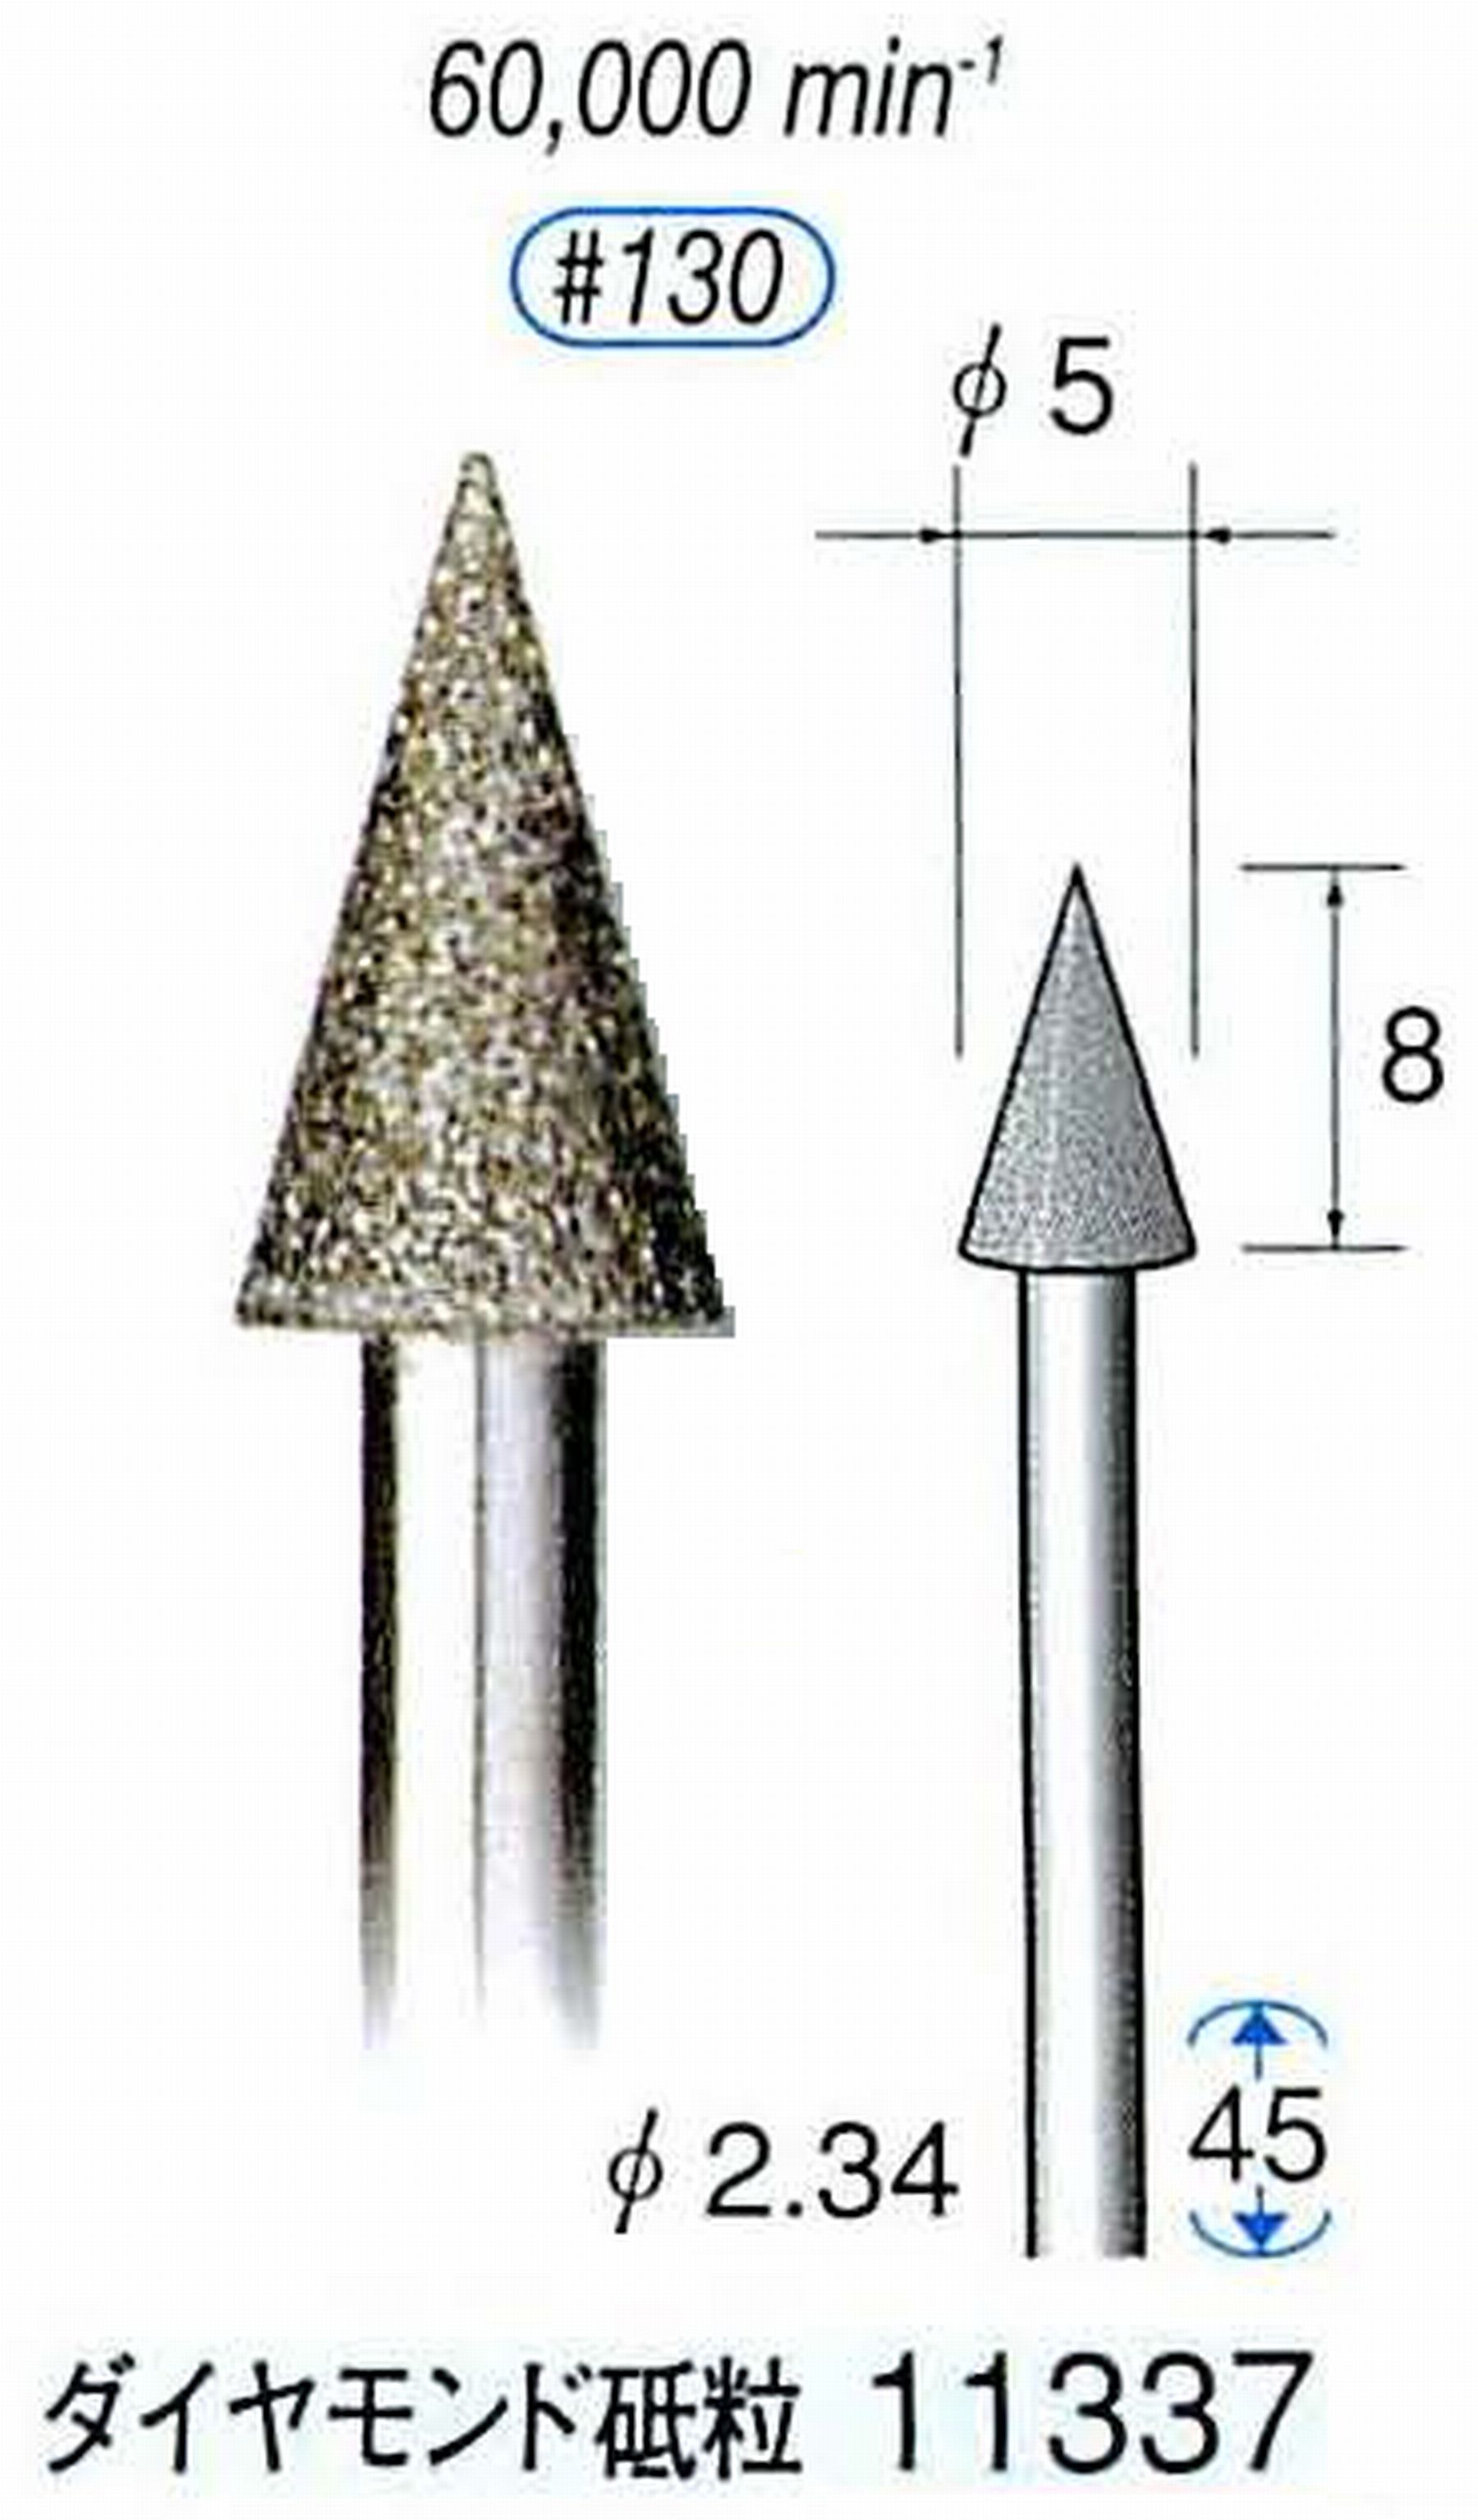 ナカニシ/NAKANISHI 電着ダイヤモンドバー ダイヤモンド砥粒 軸径(シャンク)φ2.34mm 11337